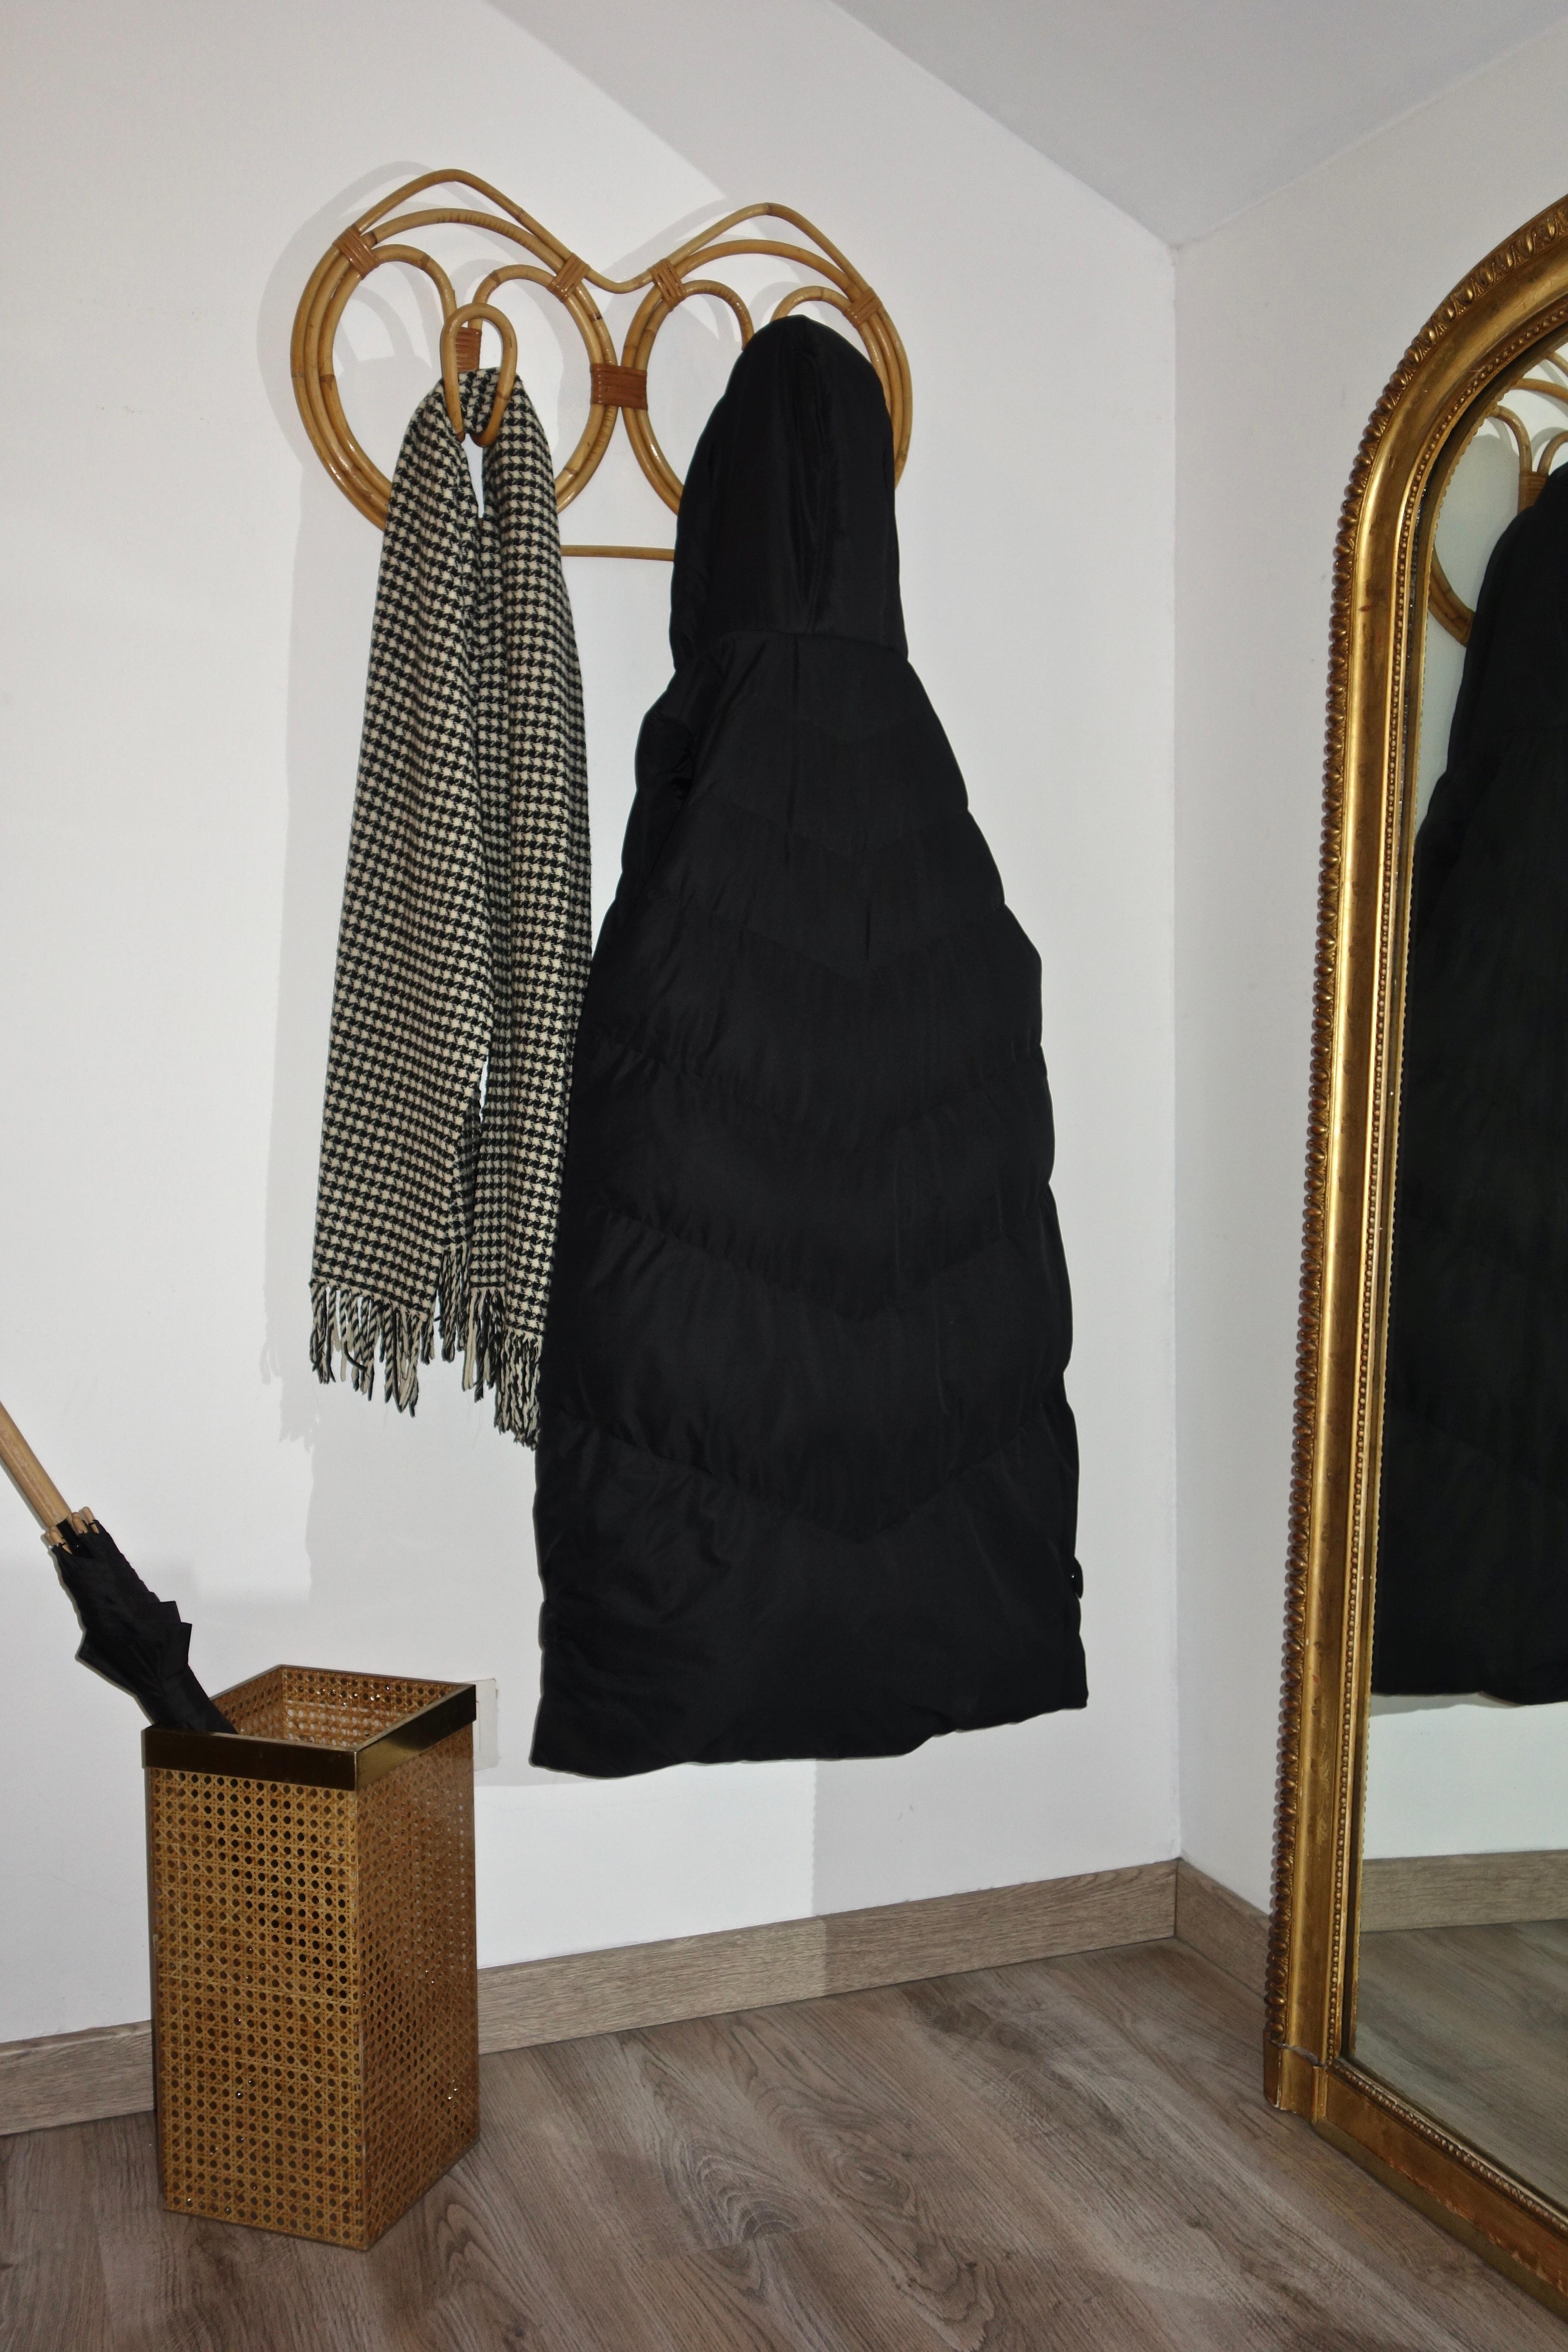 Porte manteau Italien de Franco Albini datant des années 1960's

Wandmodell aus Bambus und Rotin, bestehend aus 2 Mustern

Dieser Artikel ist in einem ausgezeichneten Erhaltungszustand und wurde von unseren Mitarbeitern gereinigt und mit einem